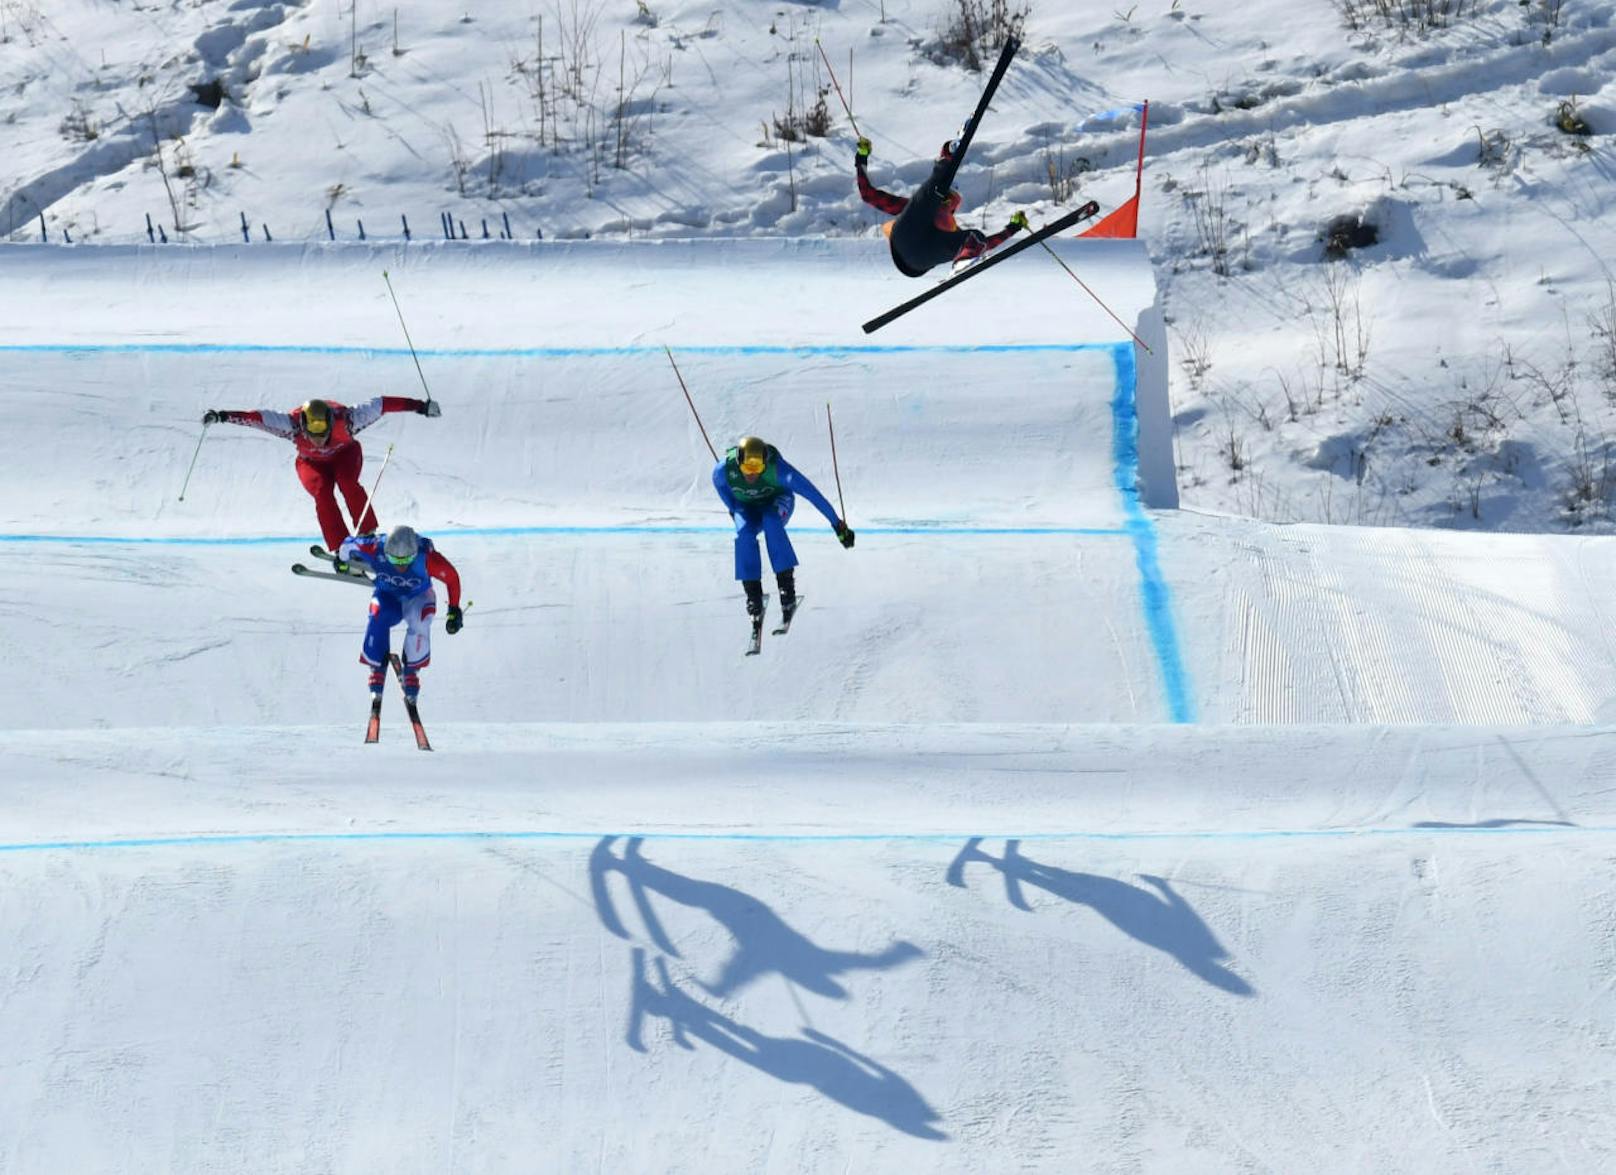 Christopher Delbosco kam auf der umstrittenen Cross-Strecke der Olympischen Winterspiele schwer zu Sturz.